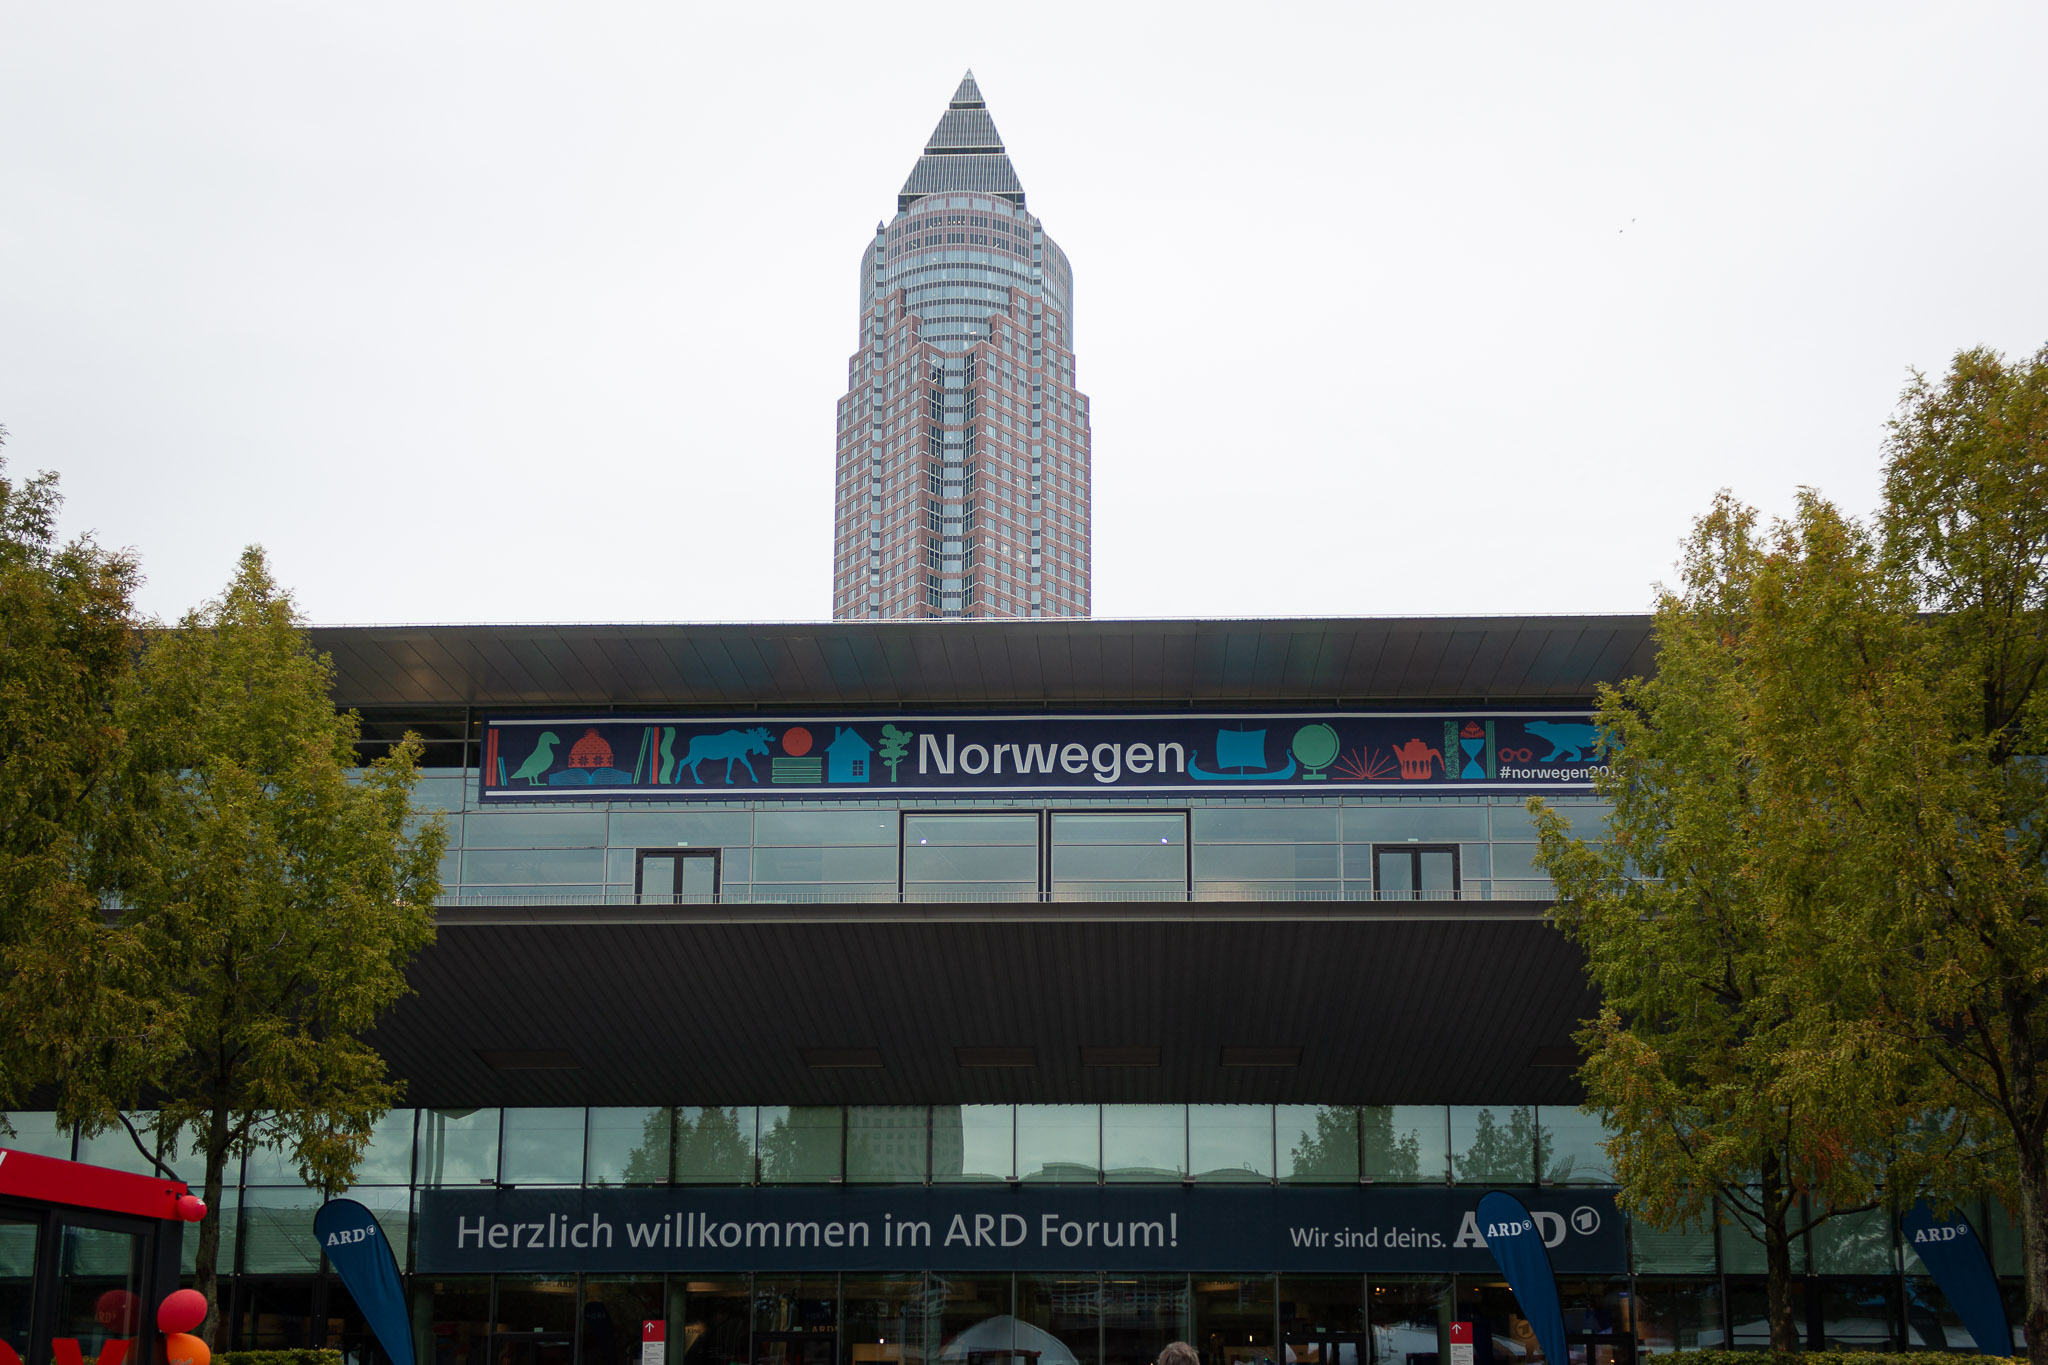 Buchmesse Frankfurt 2019